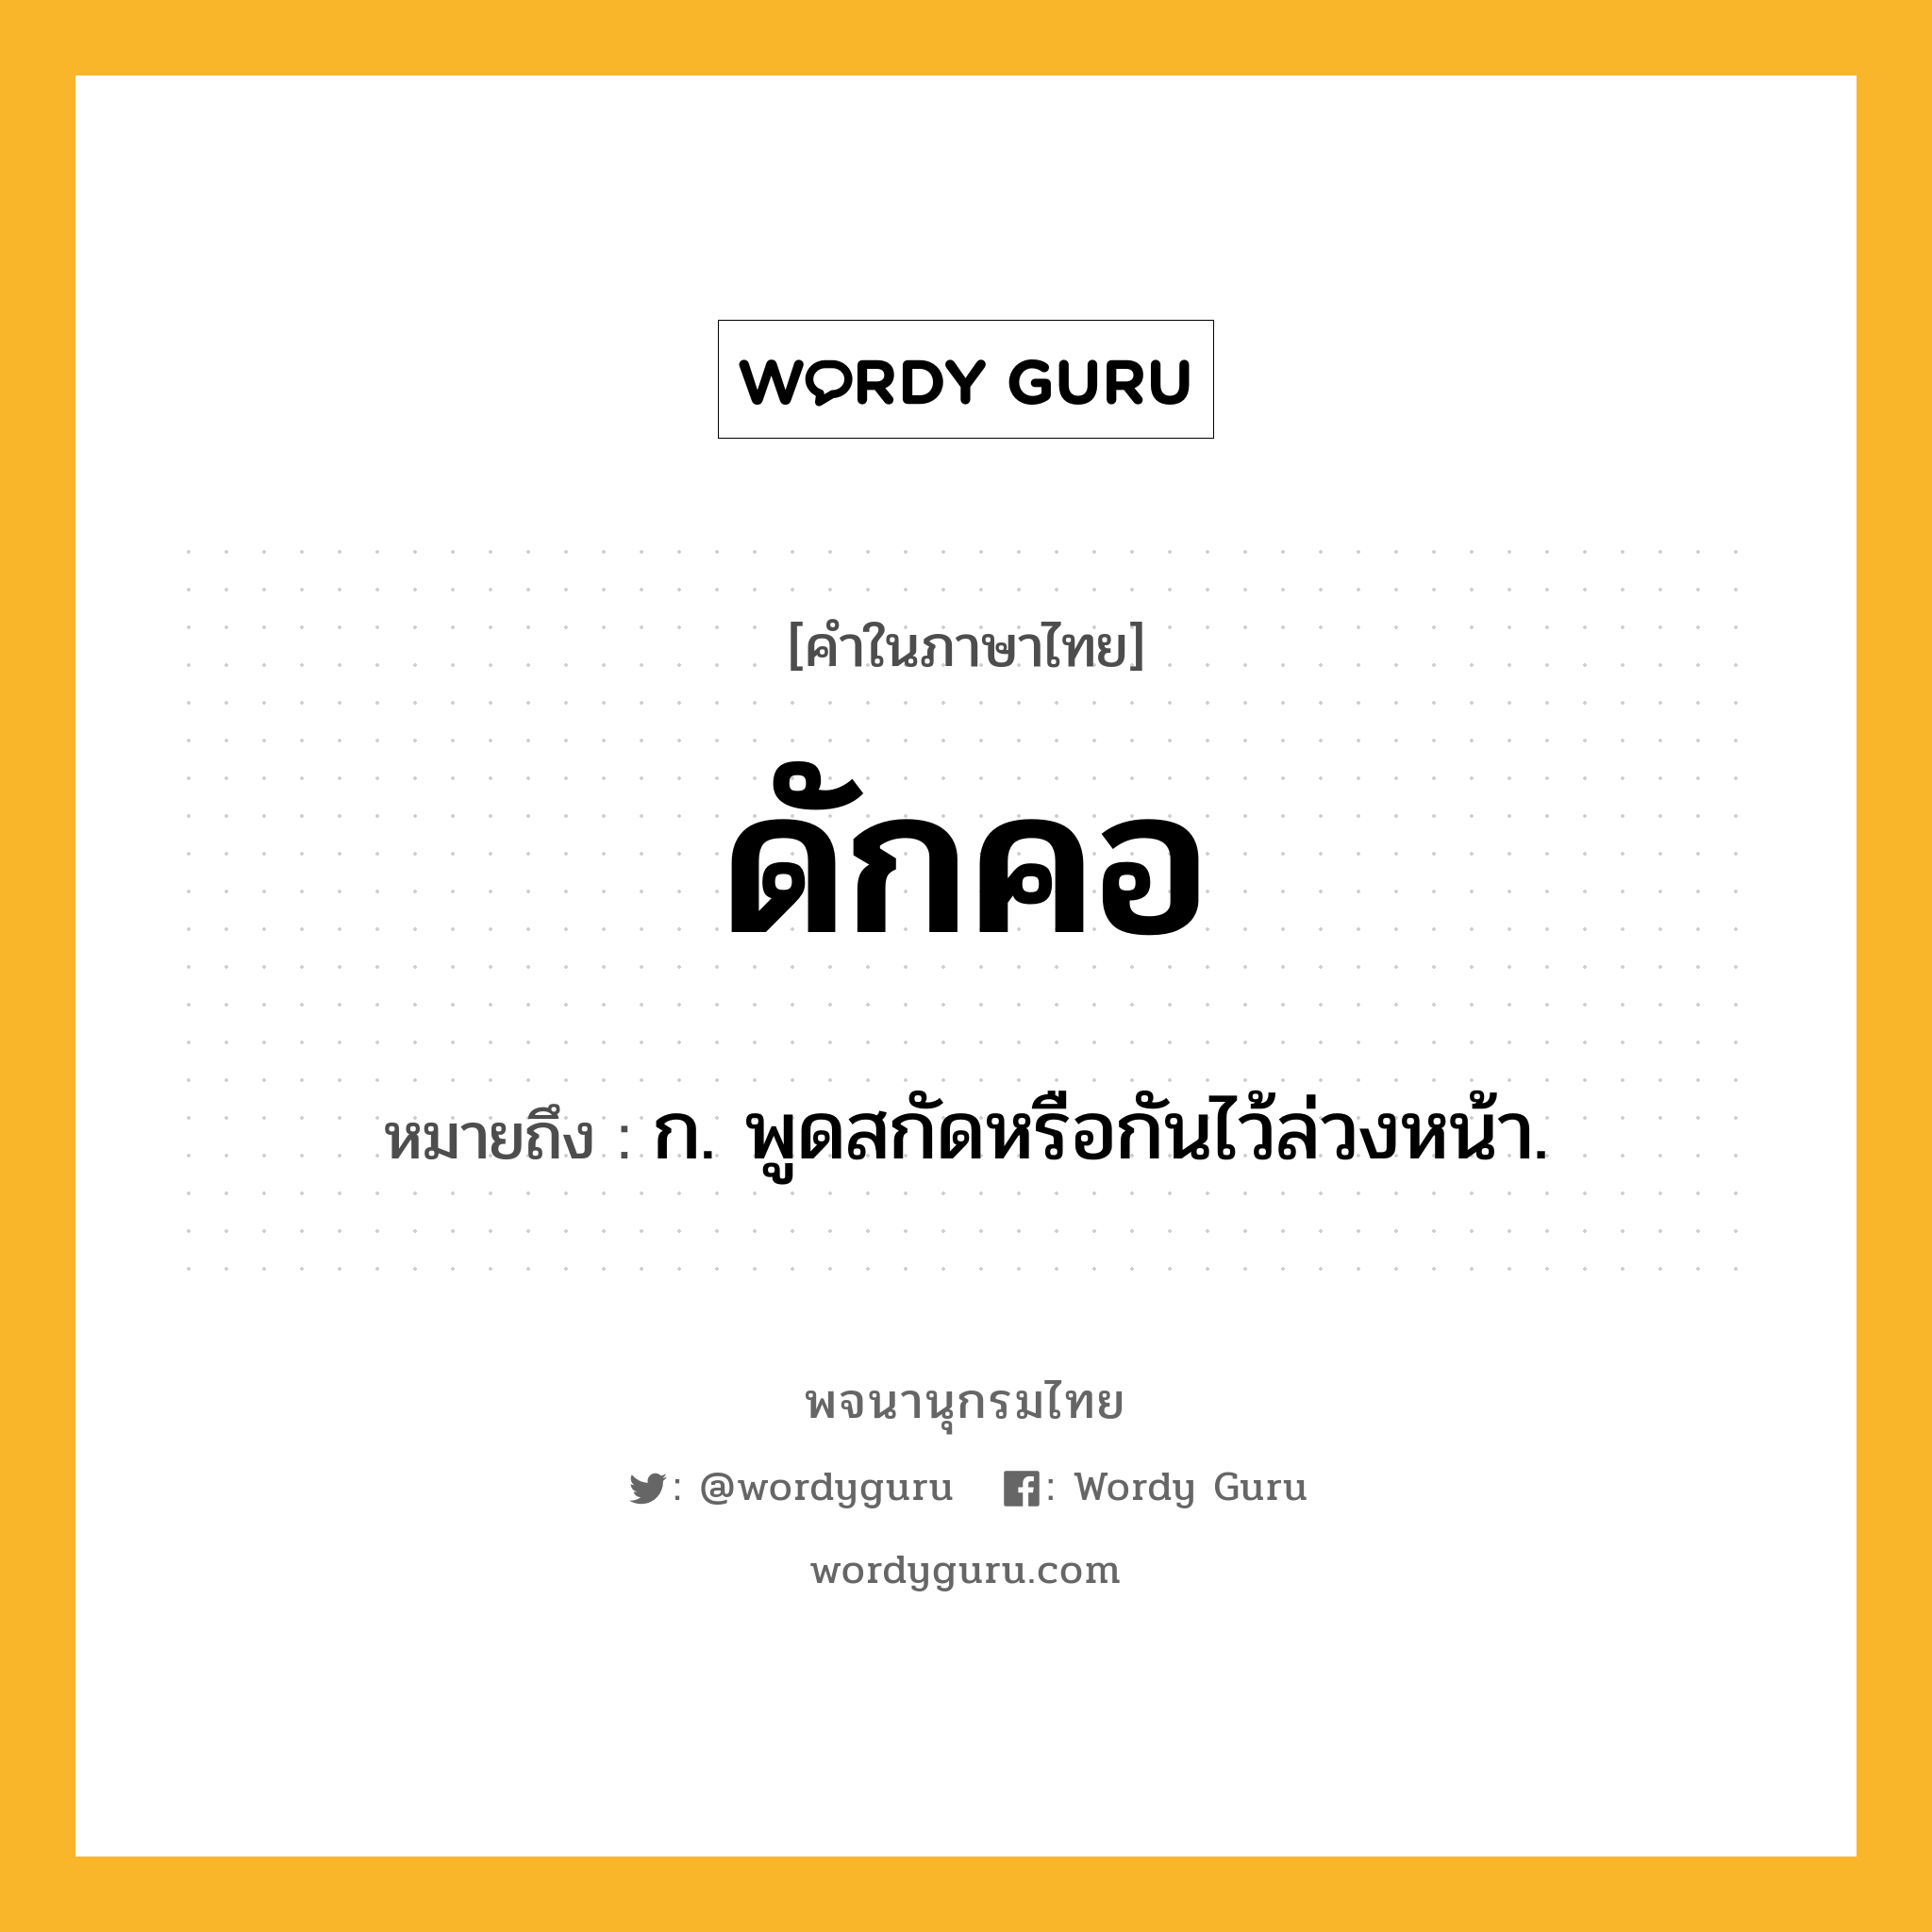 ดักคอ หมายถึงอะไร?, คำในภาษาไทย ดักคอ หมายถึง ก. พูดสกัดหรือกันไว้ล่วงหน้า.